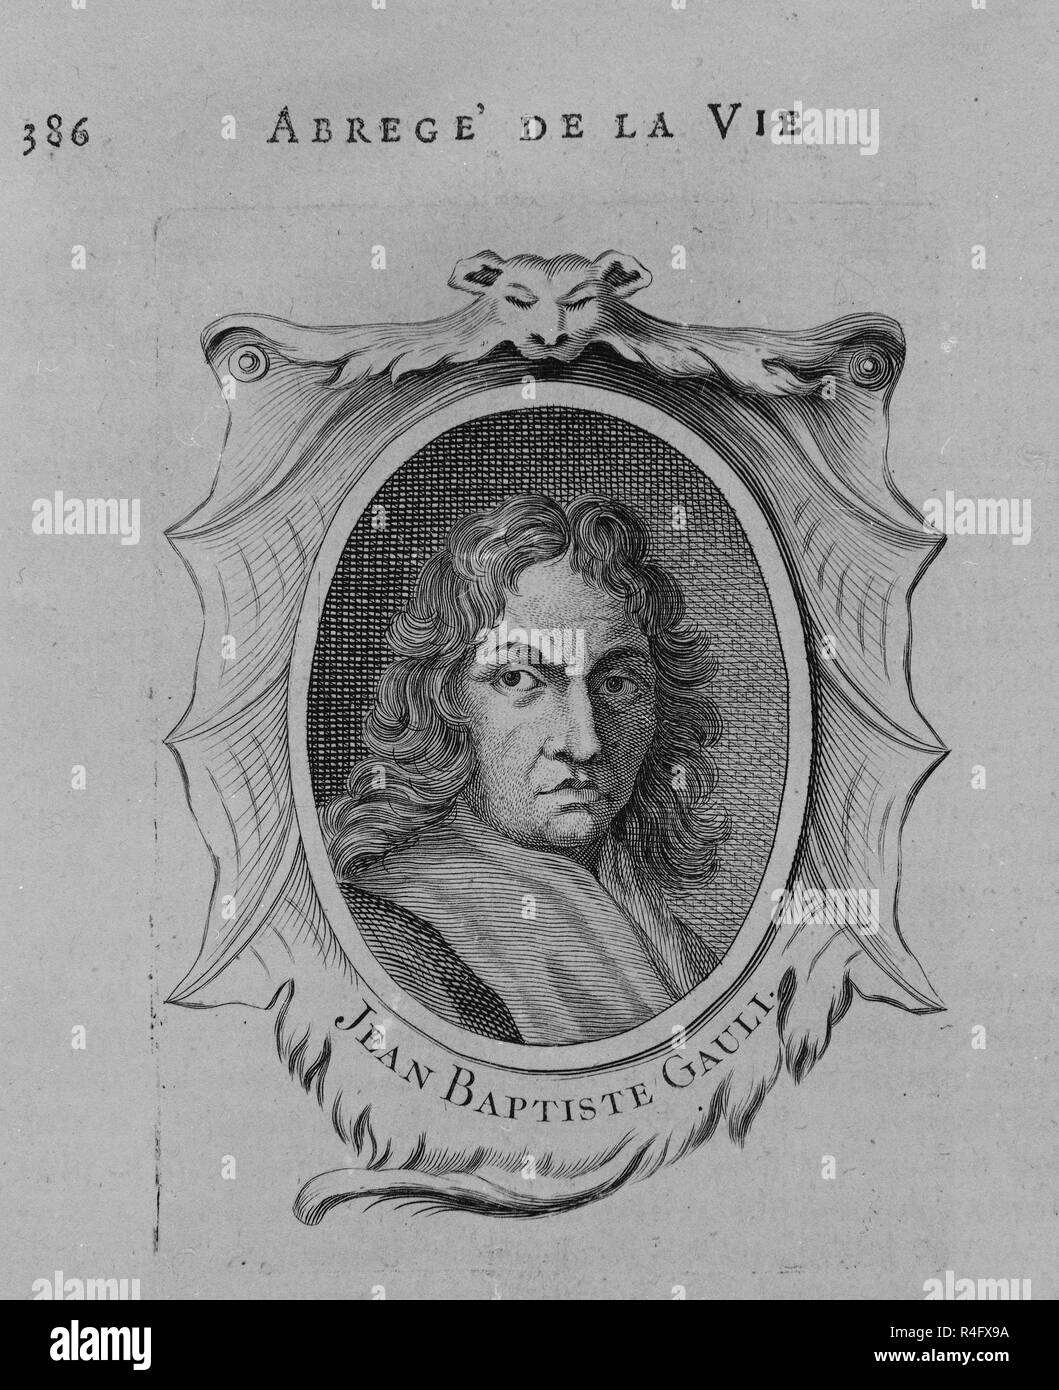 RETRATO DE Jean Baptiste GAULLI LLAMADO IL BACICCIO (1639/1709) - PINTOR BARROCO ITALIANO. Posizione: Collezione privata. MADRID. Spagna. Foto Stock